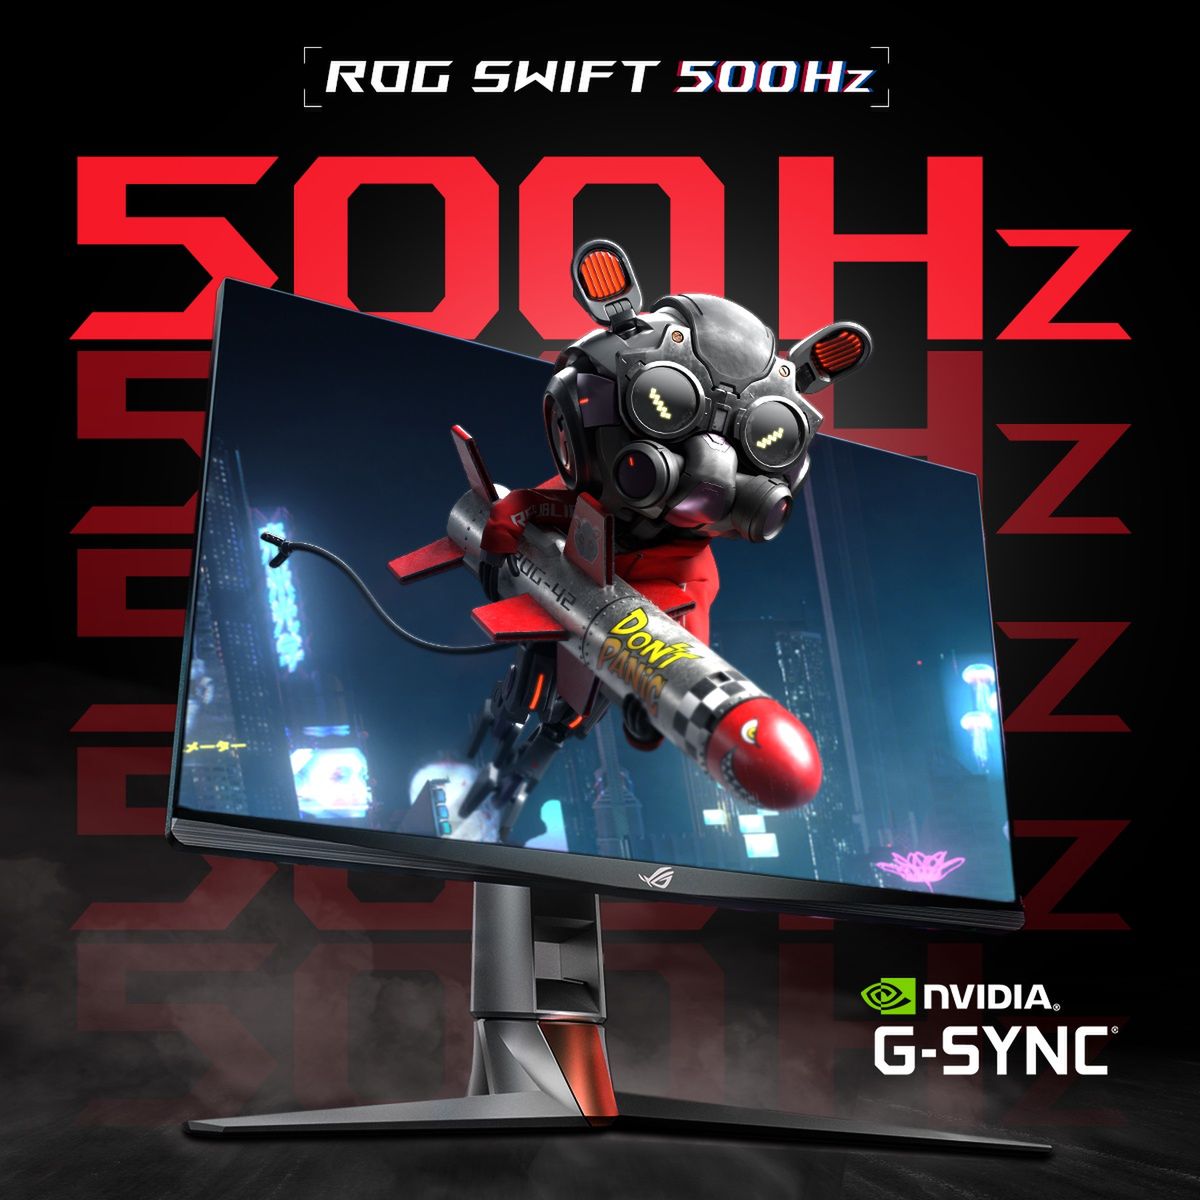 Computex 2022. Pierwszy monitor 500 Hz zaprezentowany - ASUS ROG Swift z odświeżaniem 500 Hz.